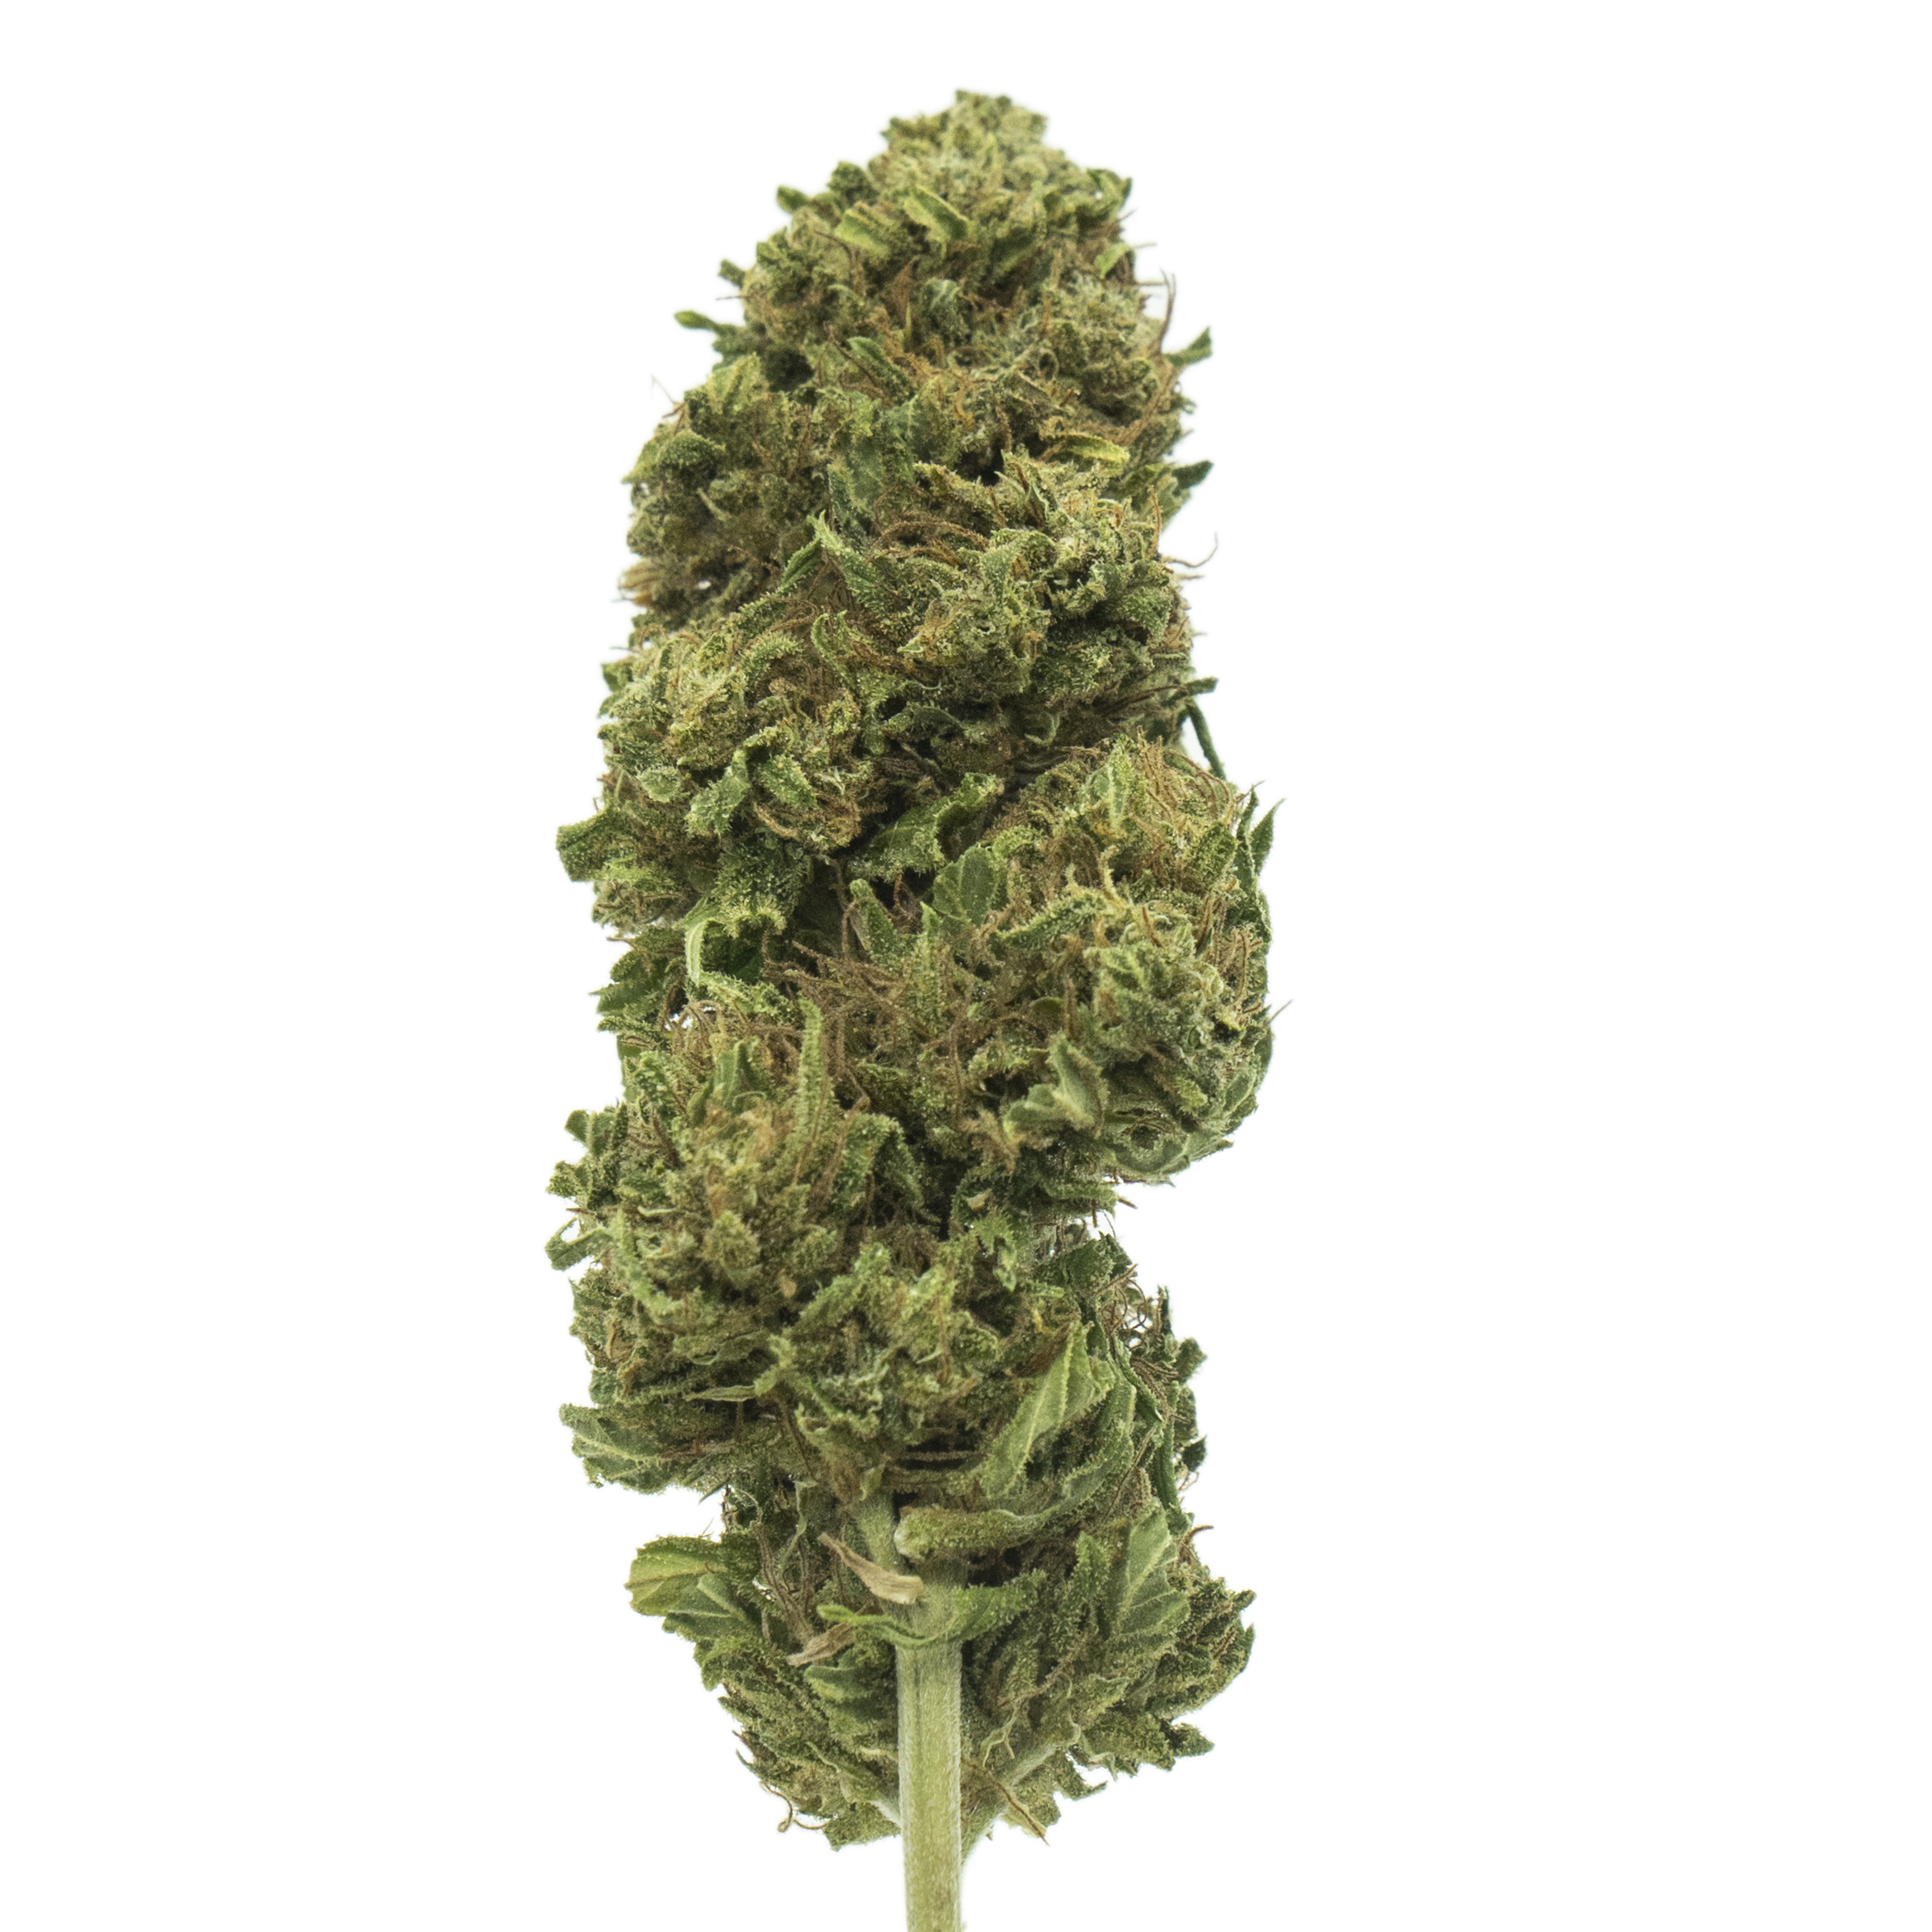 Bubba Kush - canapa light, erba legale, marijuana CBD